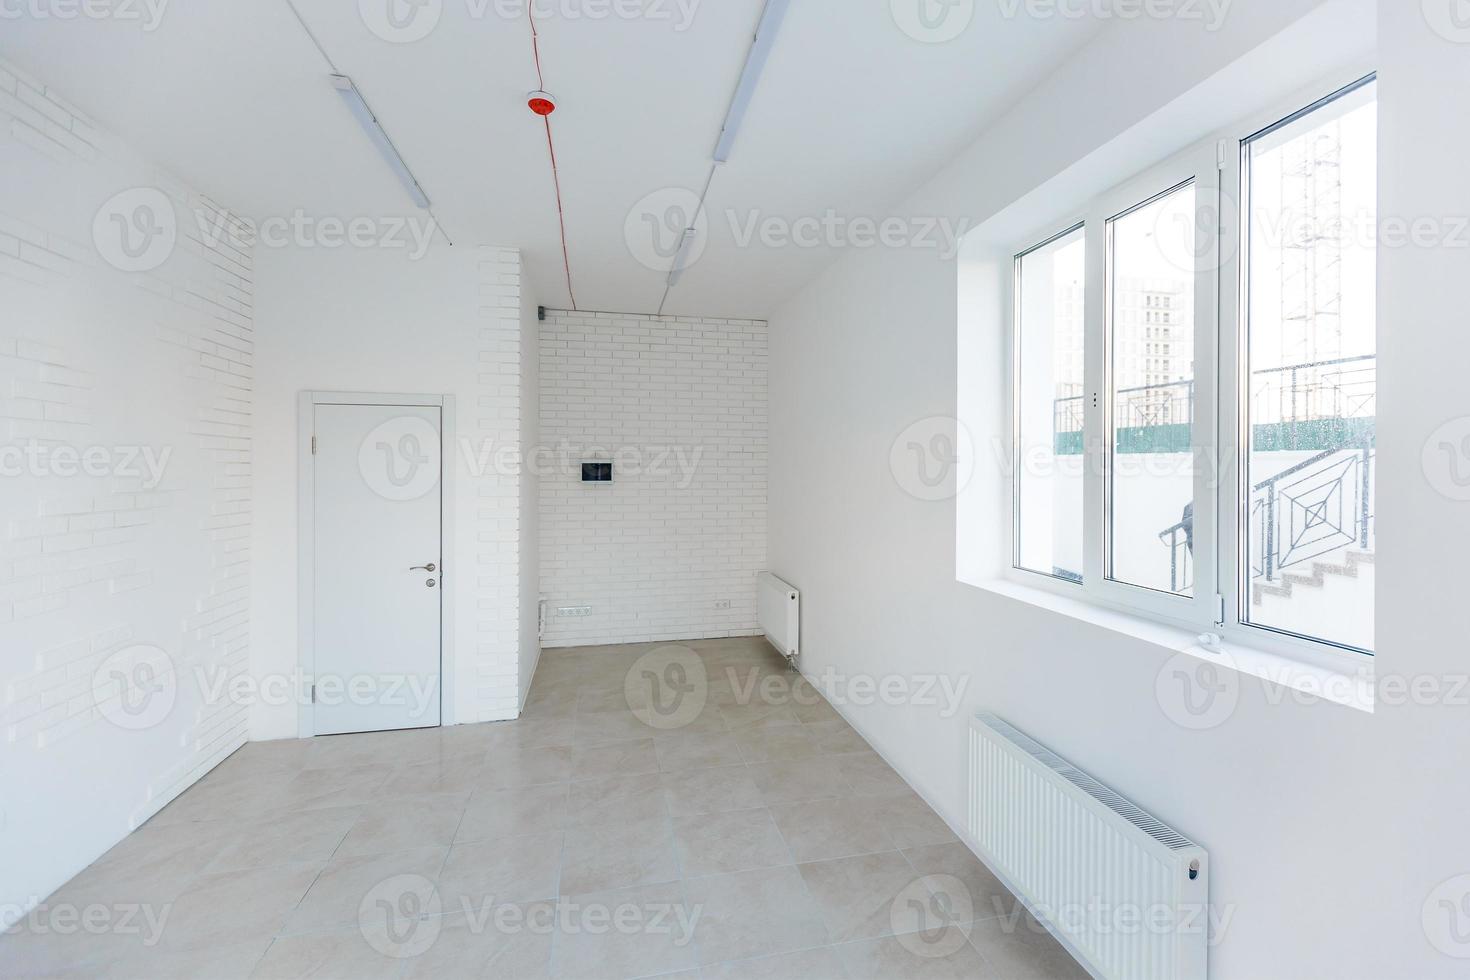 leeg kamer zonder reparatie. interieur van wit zolder kamer kantoor met panoramisch ramen in equirectangular projectie foto